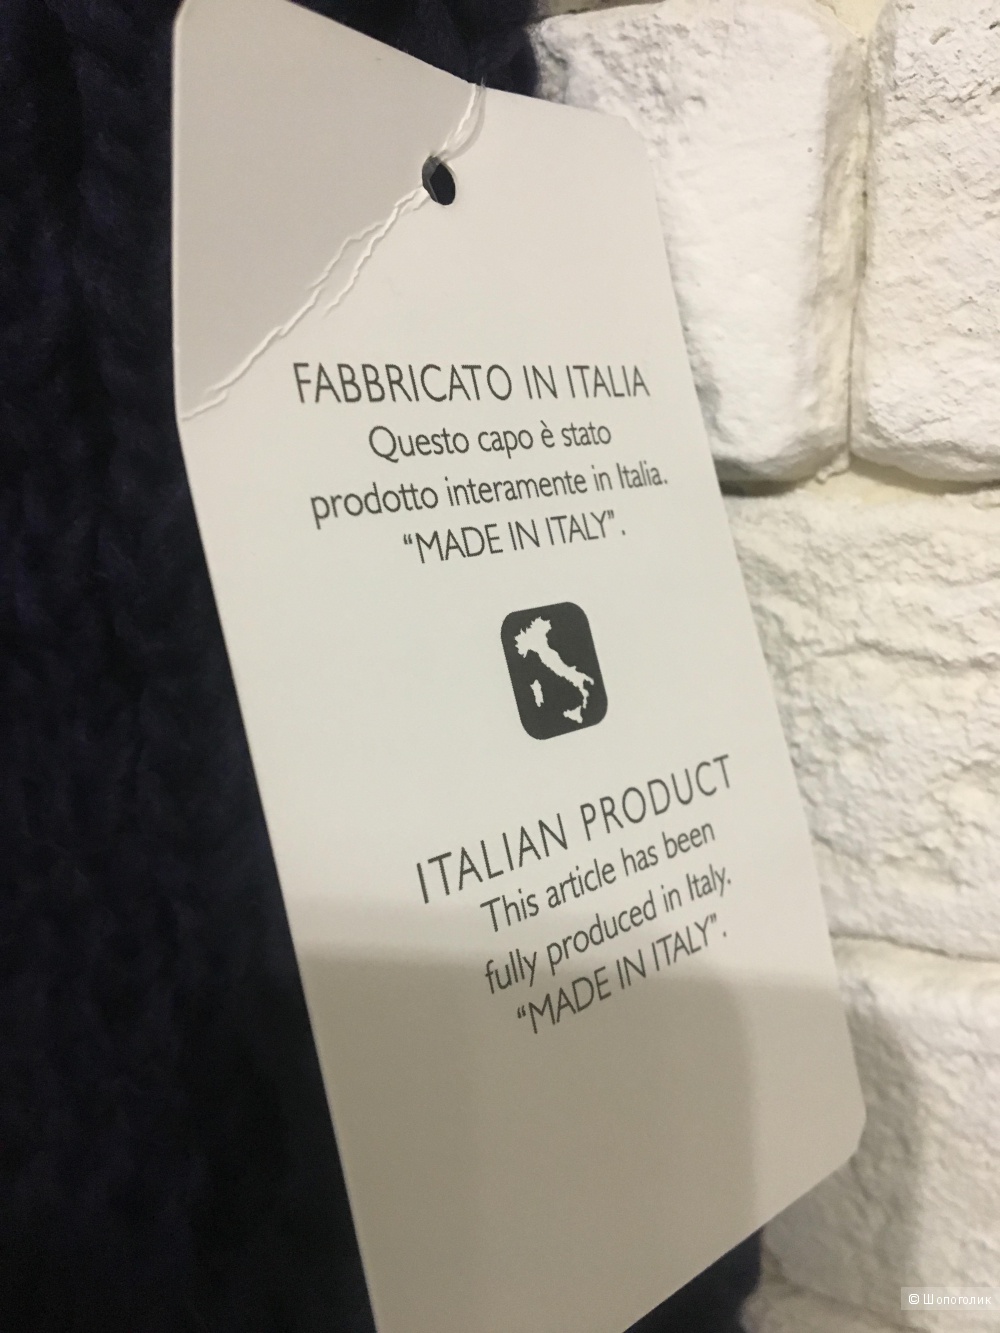 Итальянский свитер, one size, акрил